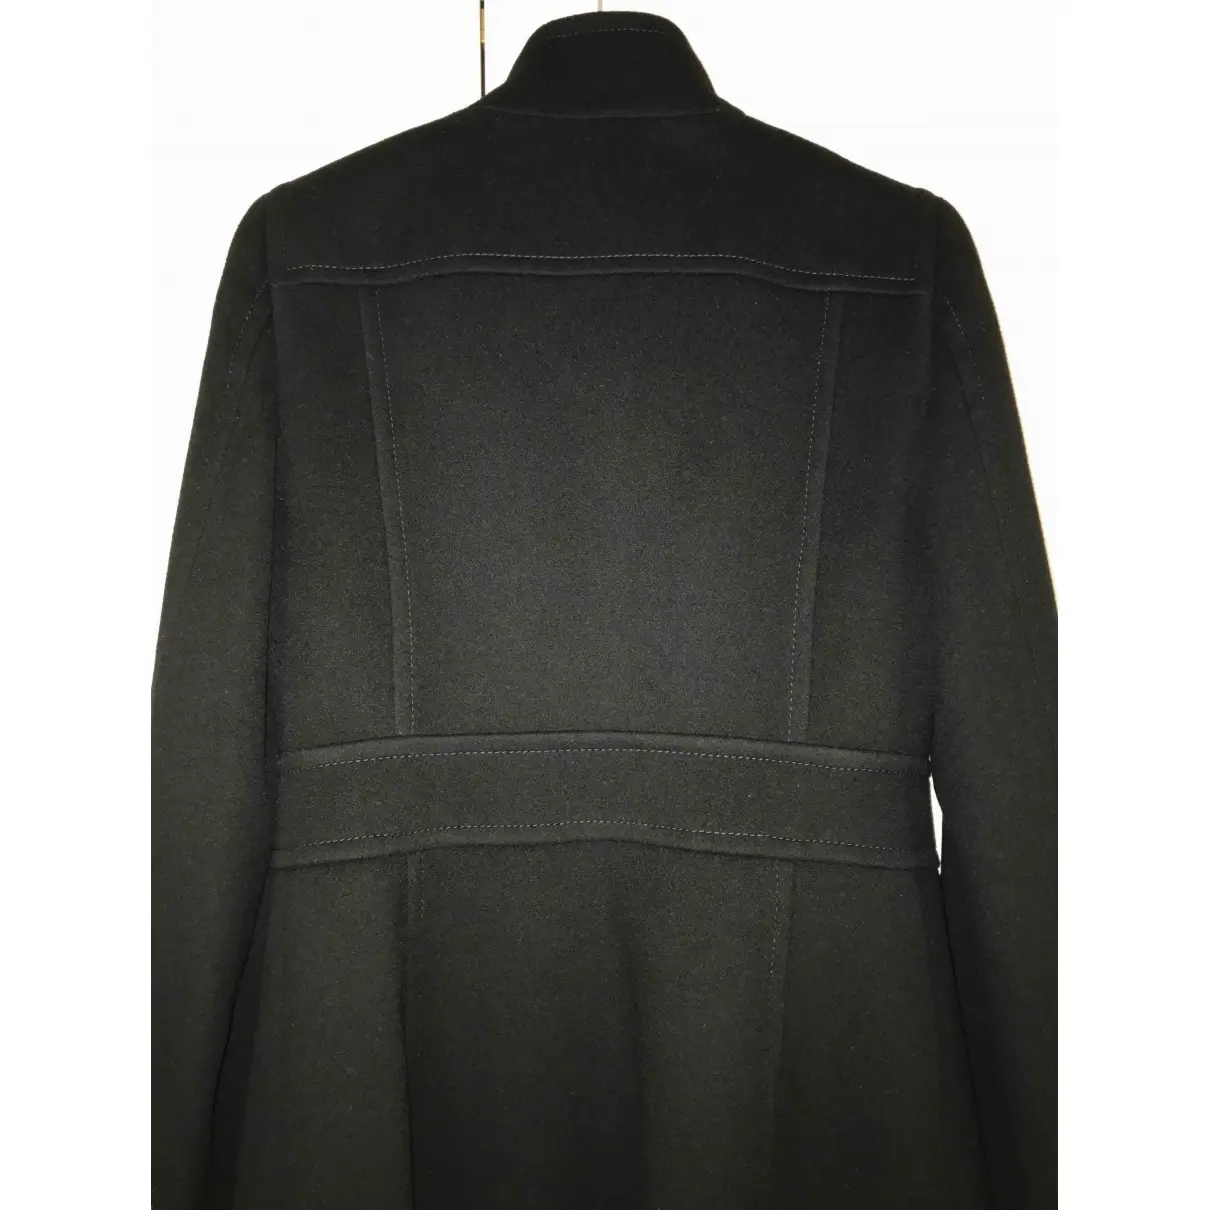 Buy Celine Wool coat online